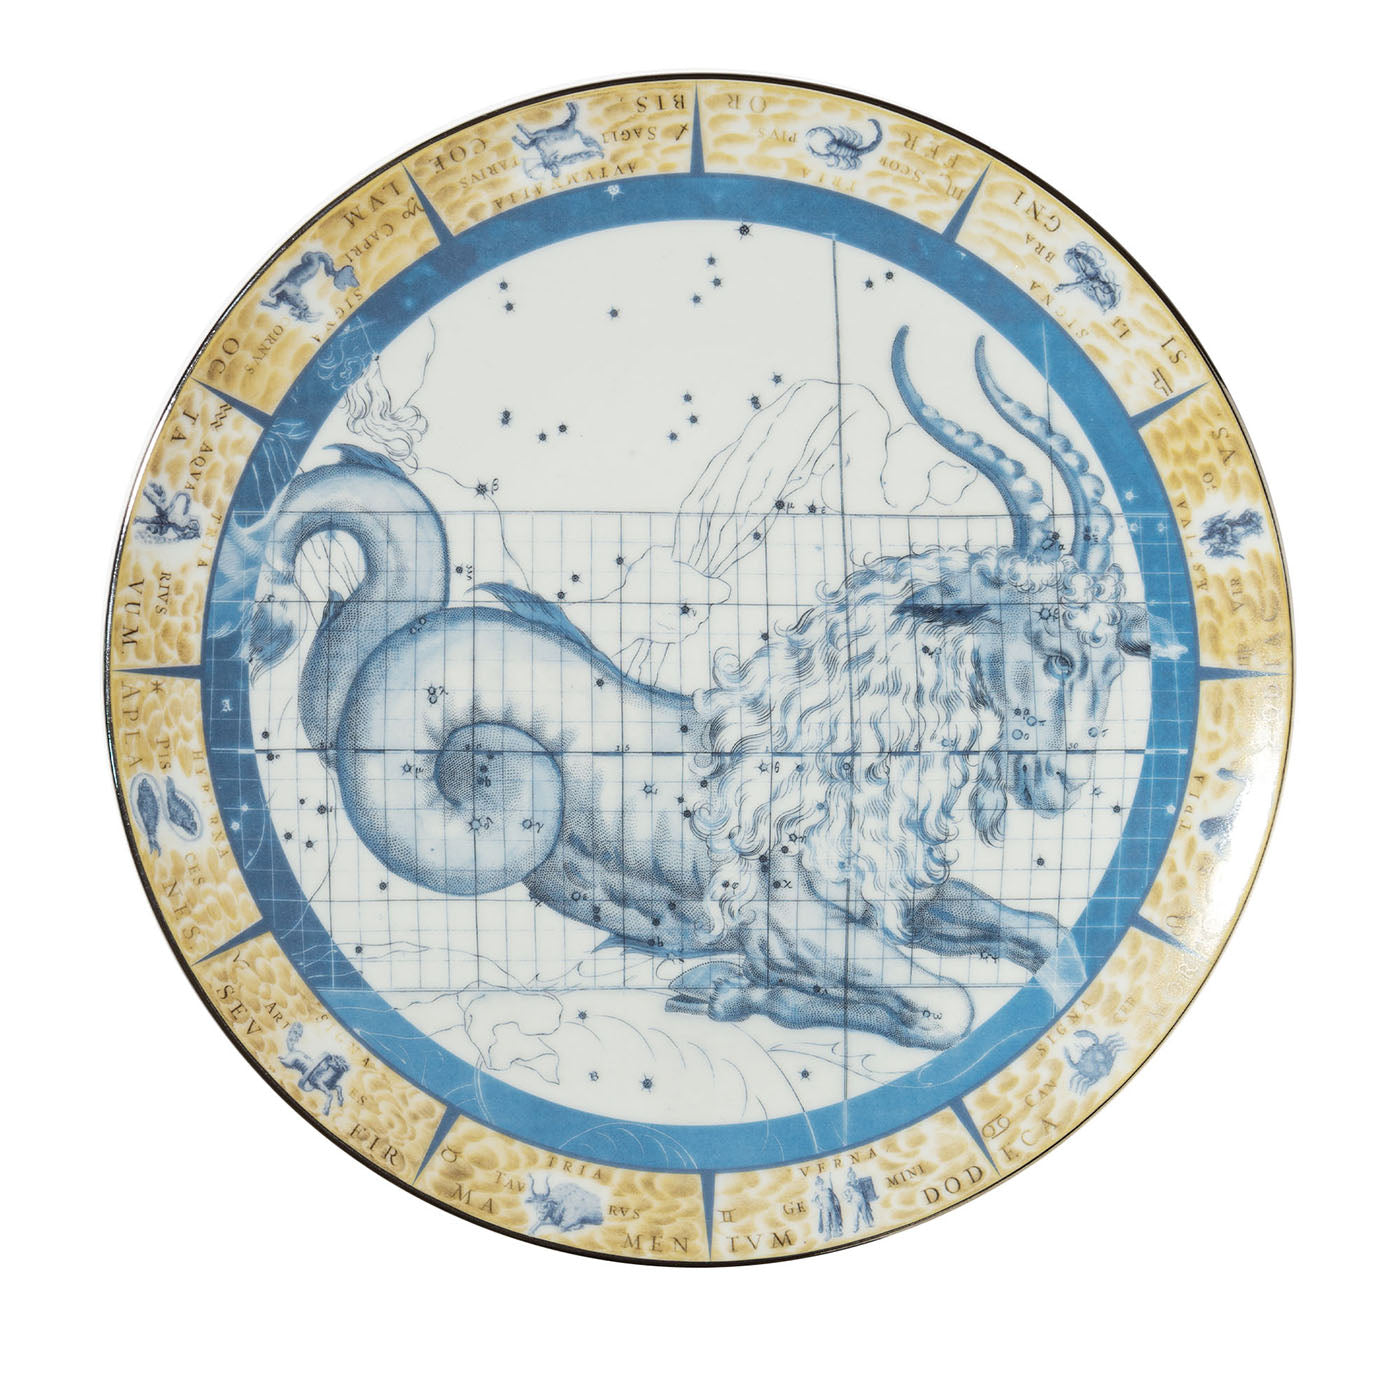 Zodiacus Capricorn decorative porcelain plate - Main view